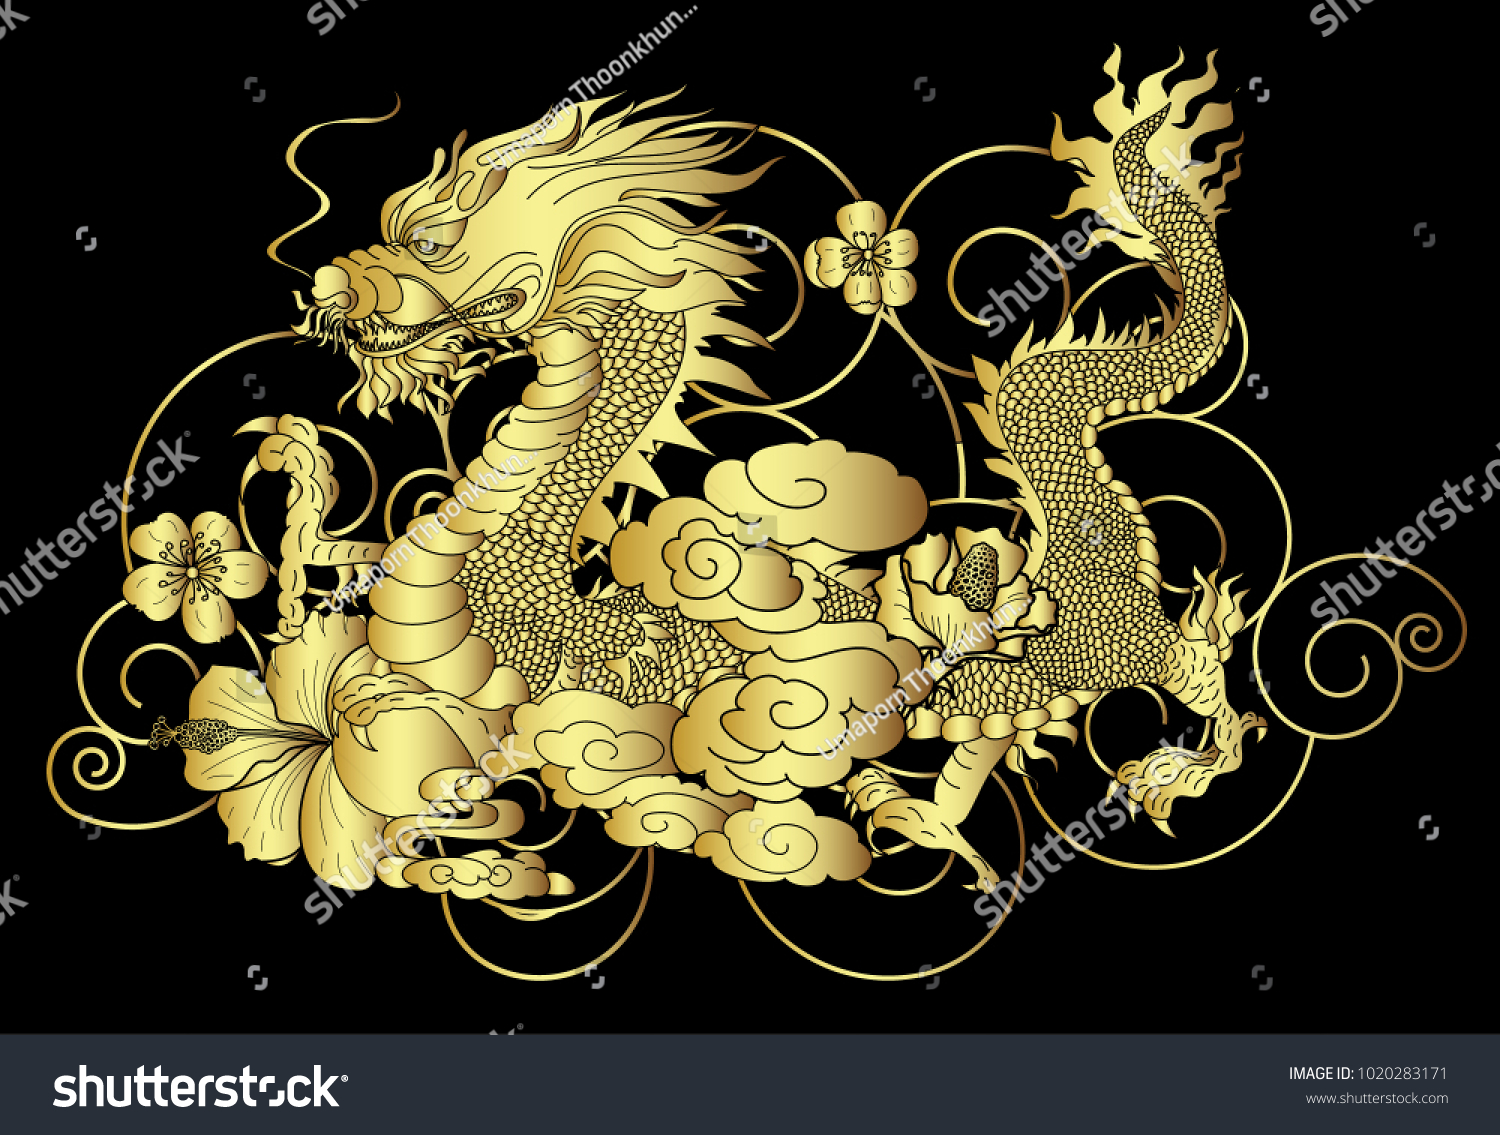 Image Vectorielle De Stock De Dragon Doré Japonais Pour Fond